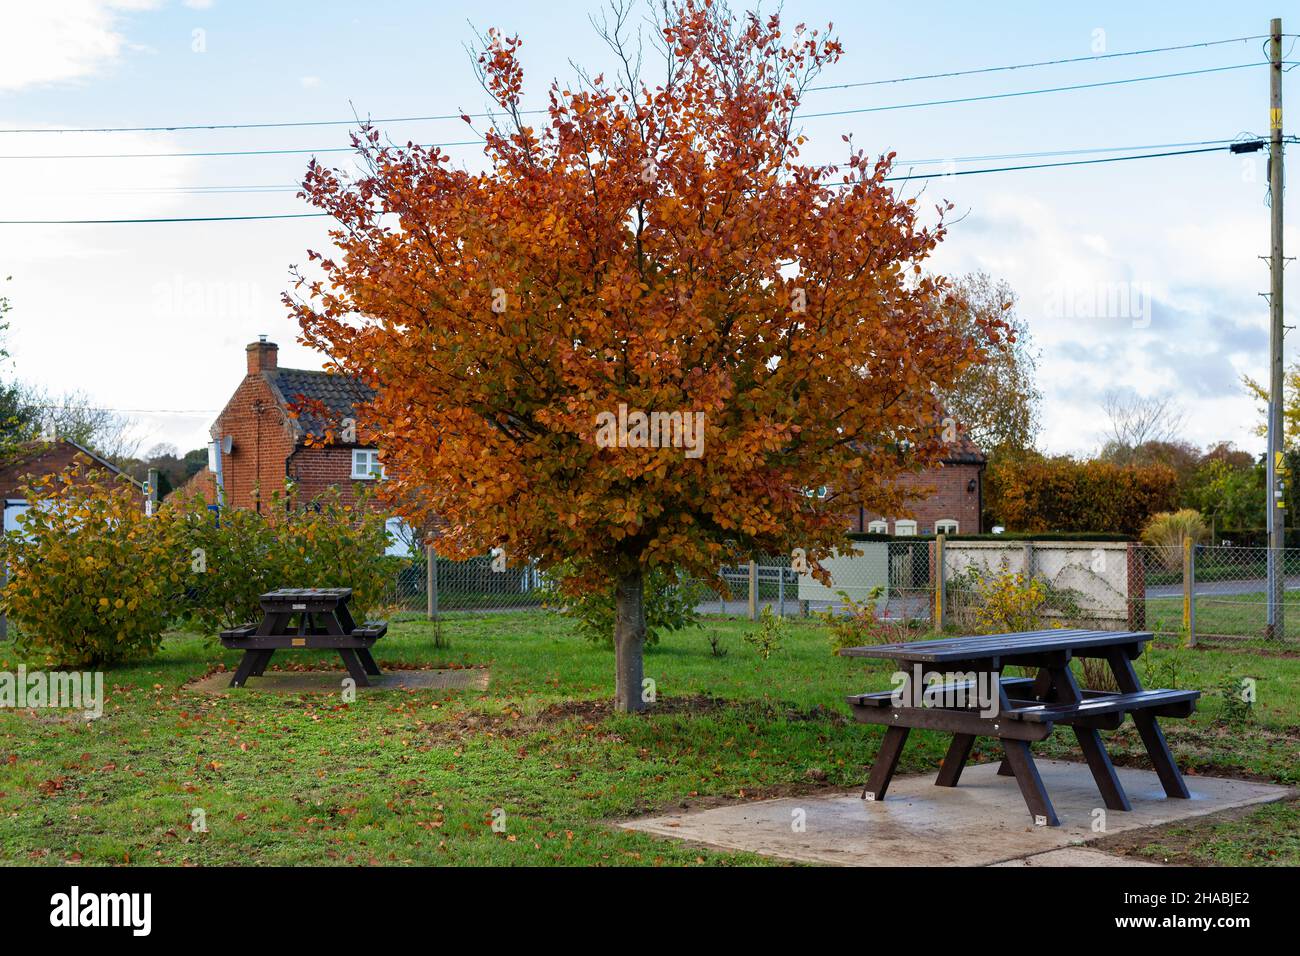 Ein europäischer Buchenbaum in leuchtenden Herbstfarben. Es gibt 2 Picknickbänke in der Nähe Stockfoto